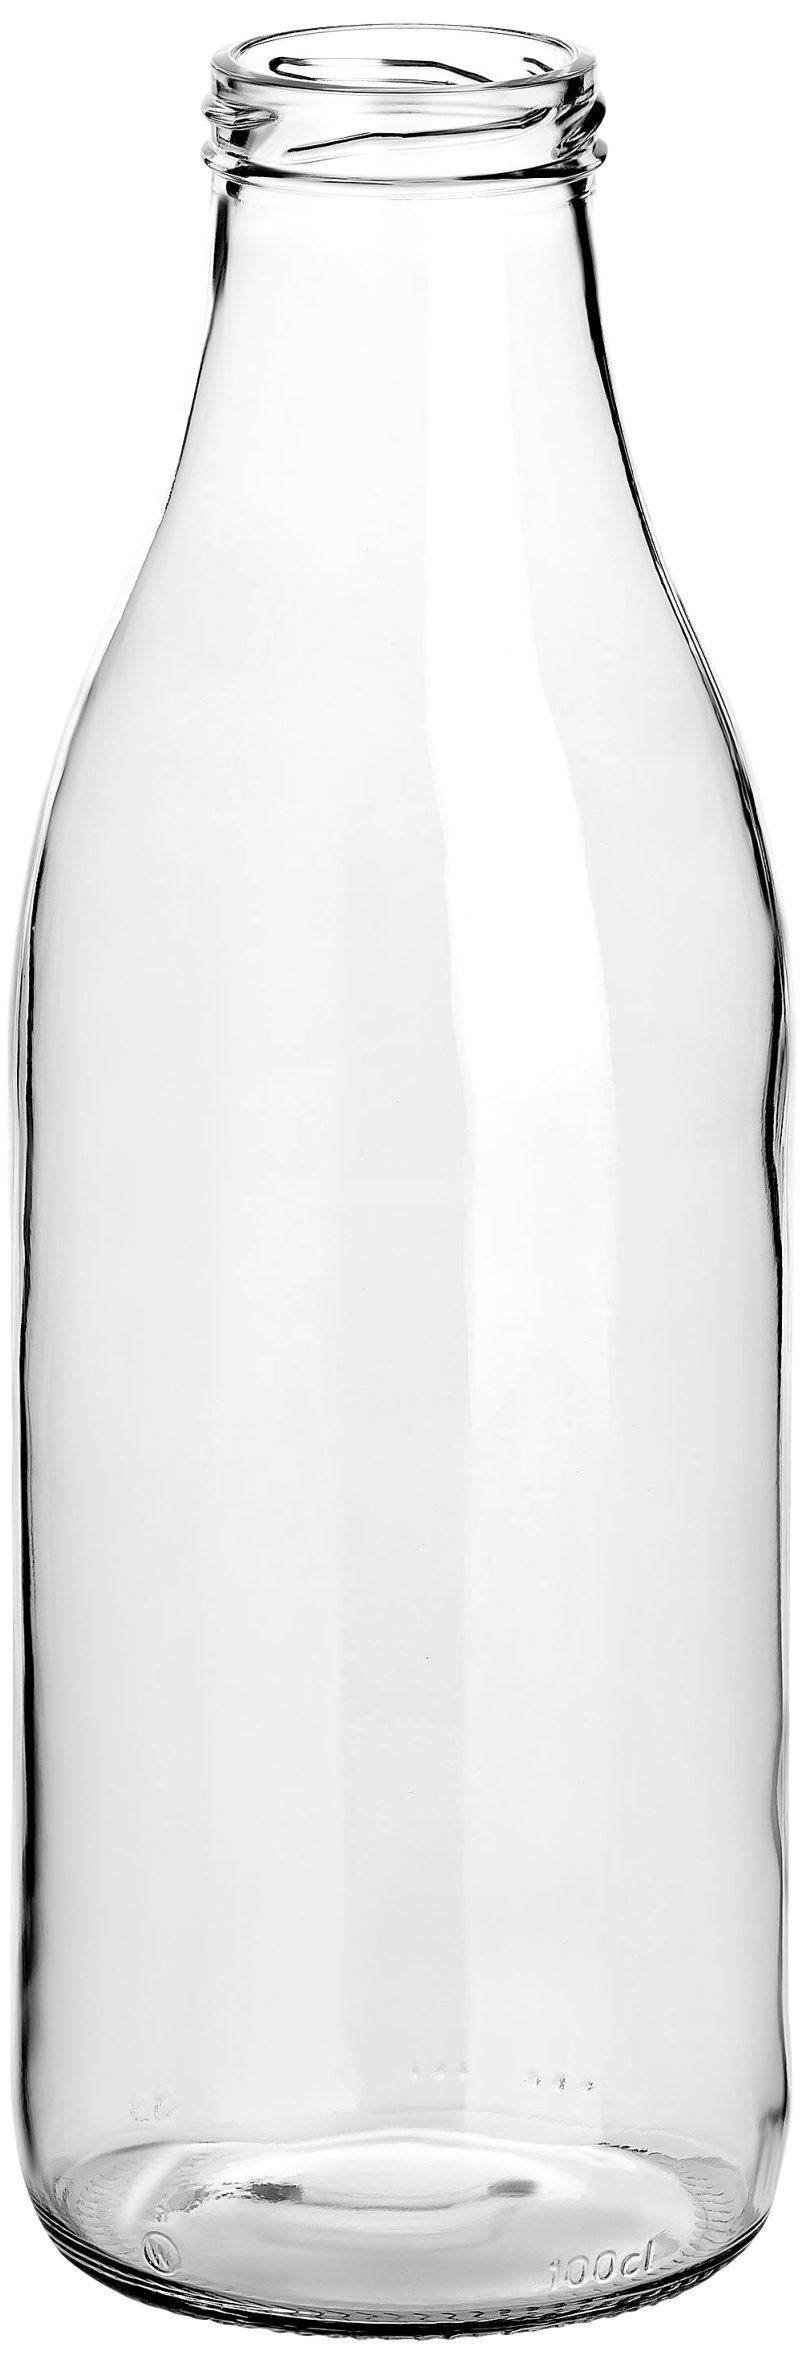 Große l Flasche mit ml gouveo Schraub-Deckel 1,0 schwarz Saftflaschen Trinkflasche Glas, aus 6er - Set, 1000